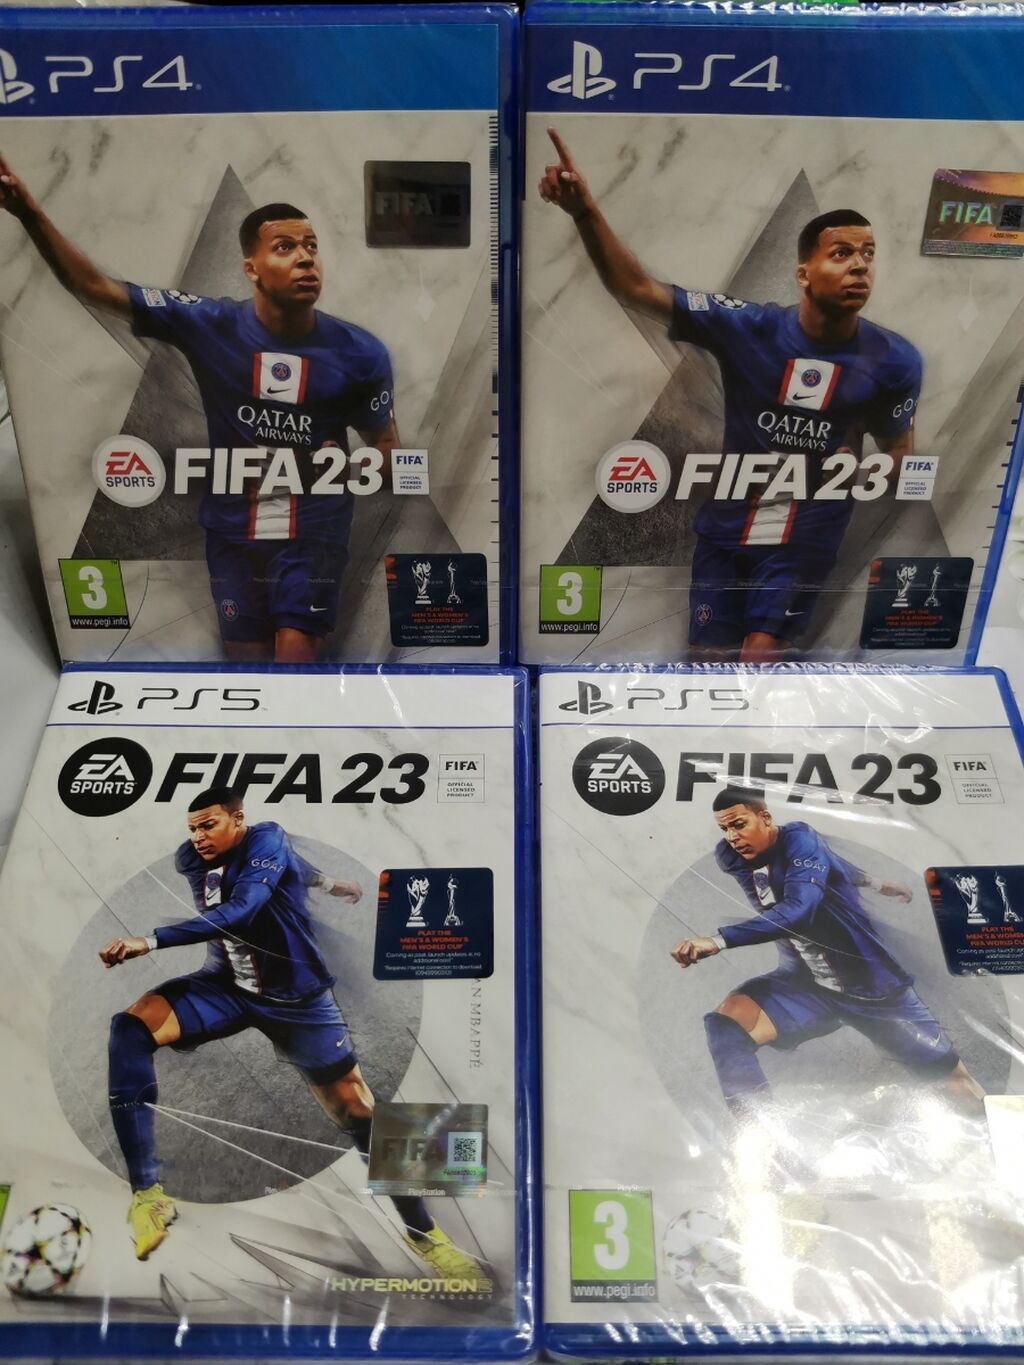 JOGO SONY FIFA 23 PS4